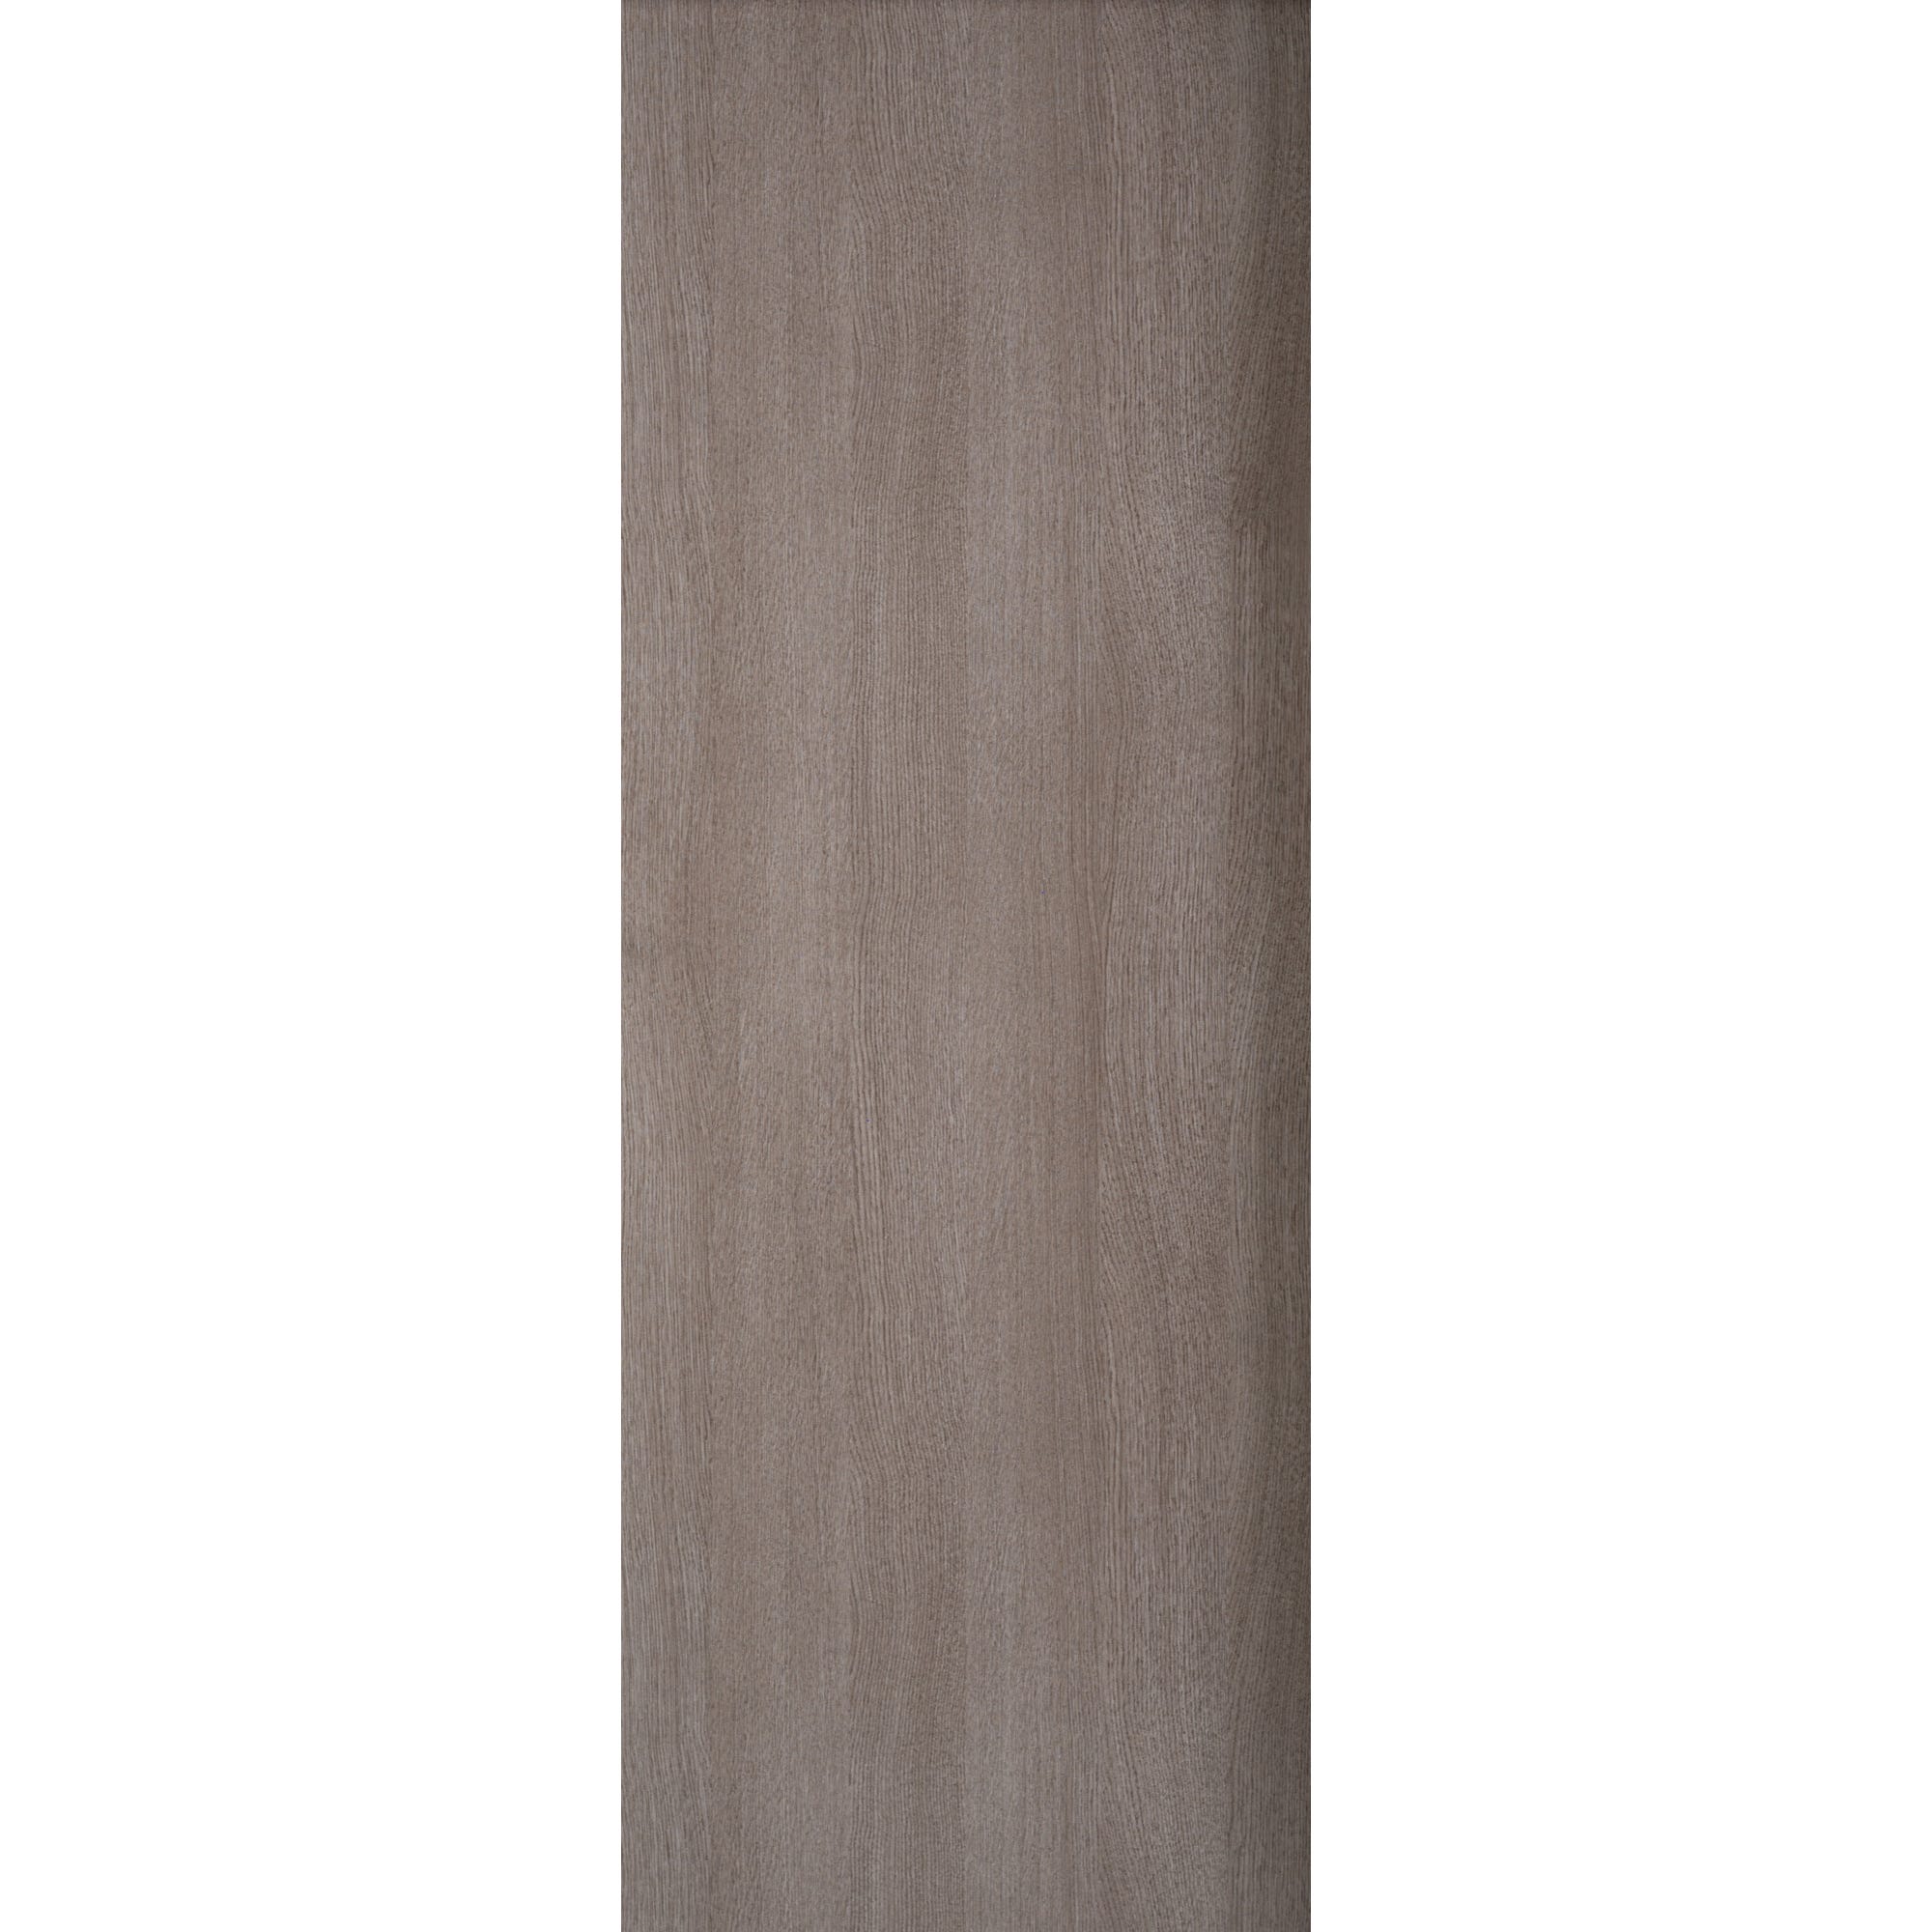 Porte revêtue décor chêne gris pirée H.204 x l.83 cm - GIMM 0